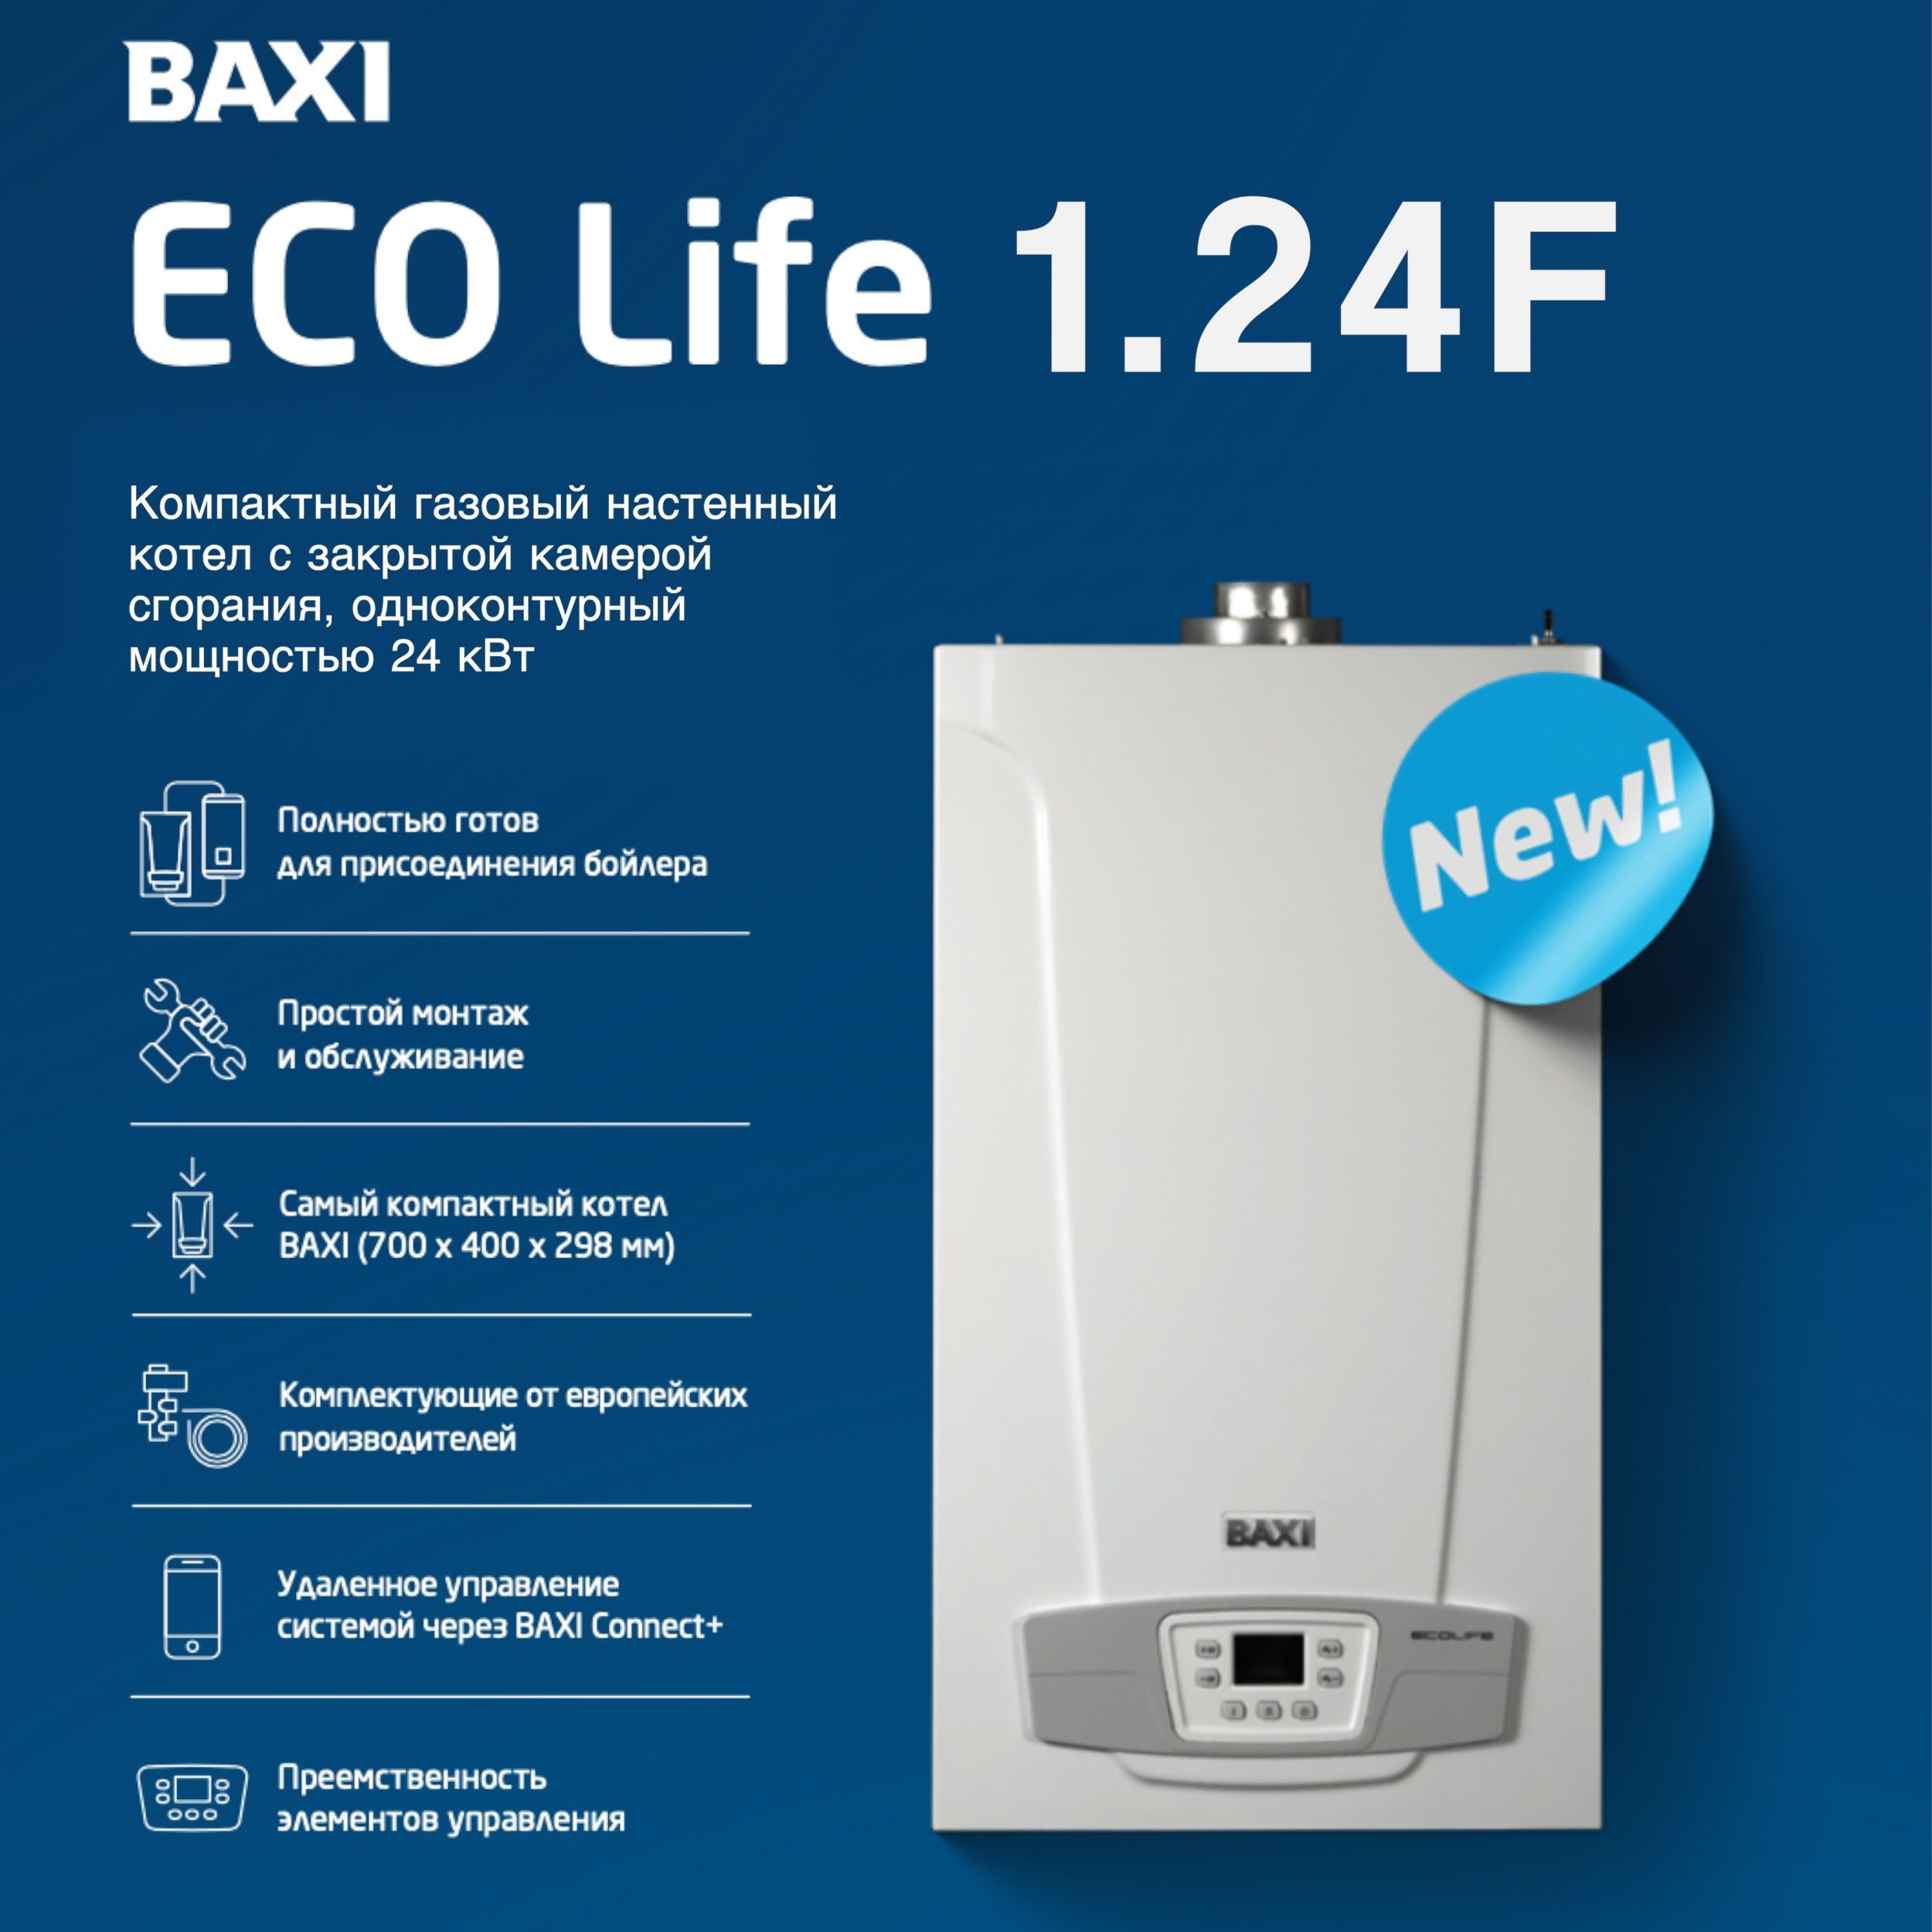 Котел газовый eco life 24f. Baxi Eco Life 24f. Baxi Eco Life 1.24f. Baxi Eco Life 24f котел газовый настенный. Котел газовый Baxi Eco Life 24квт.